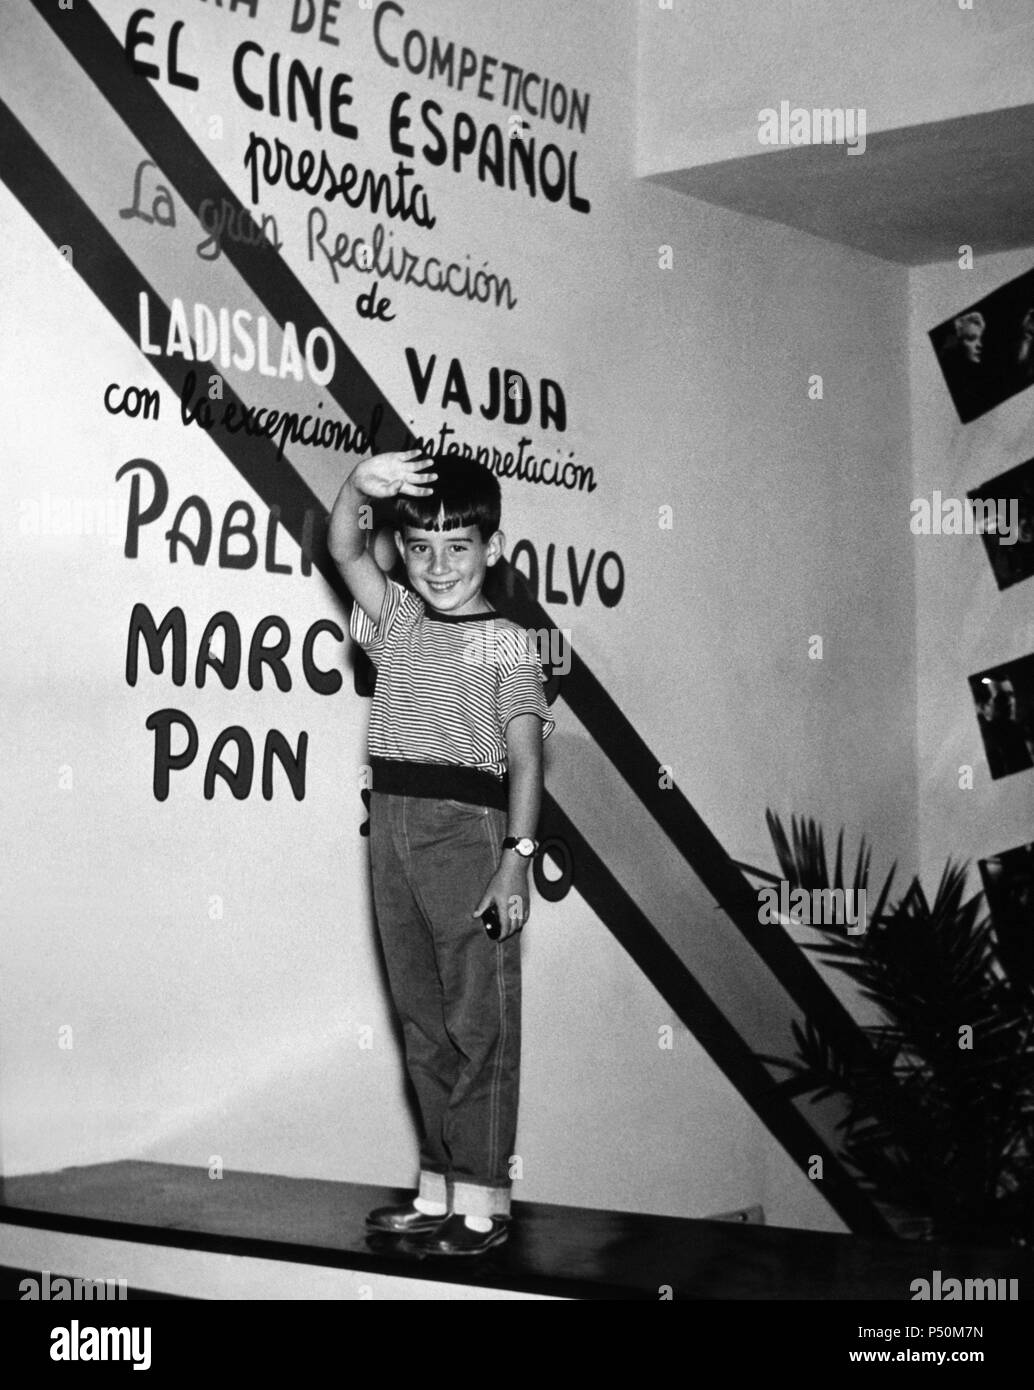 Pablito Calvo en el tehen' Español, durante la Präsentation de la película bin arcelino Pan y vino" en el Festival Internacional de Cine de Venecia del año 1955. Italia. Stockfoto